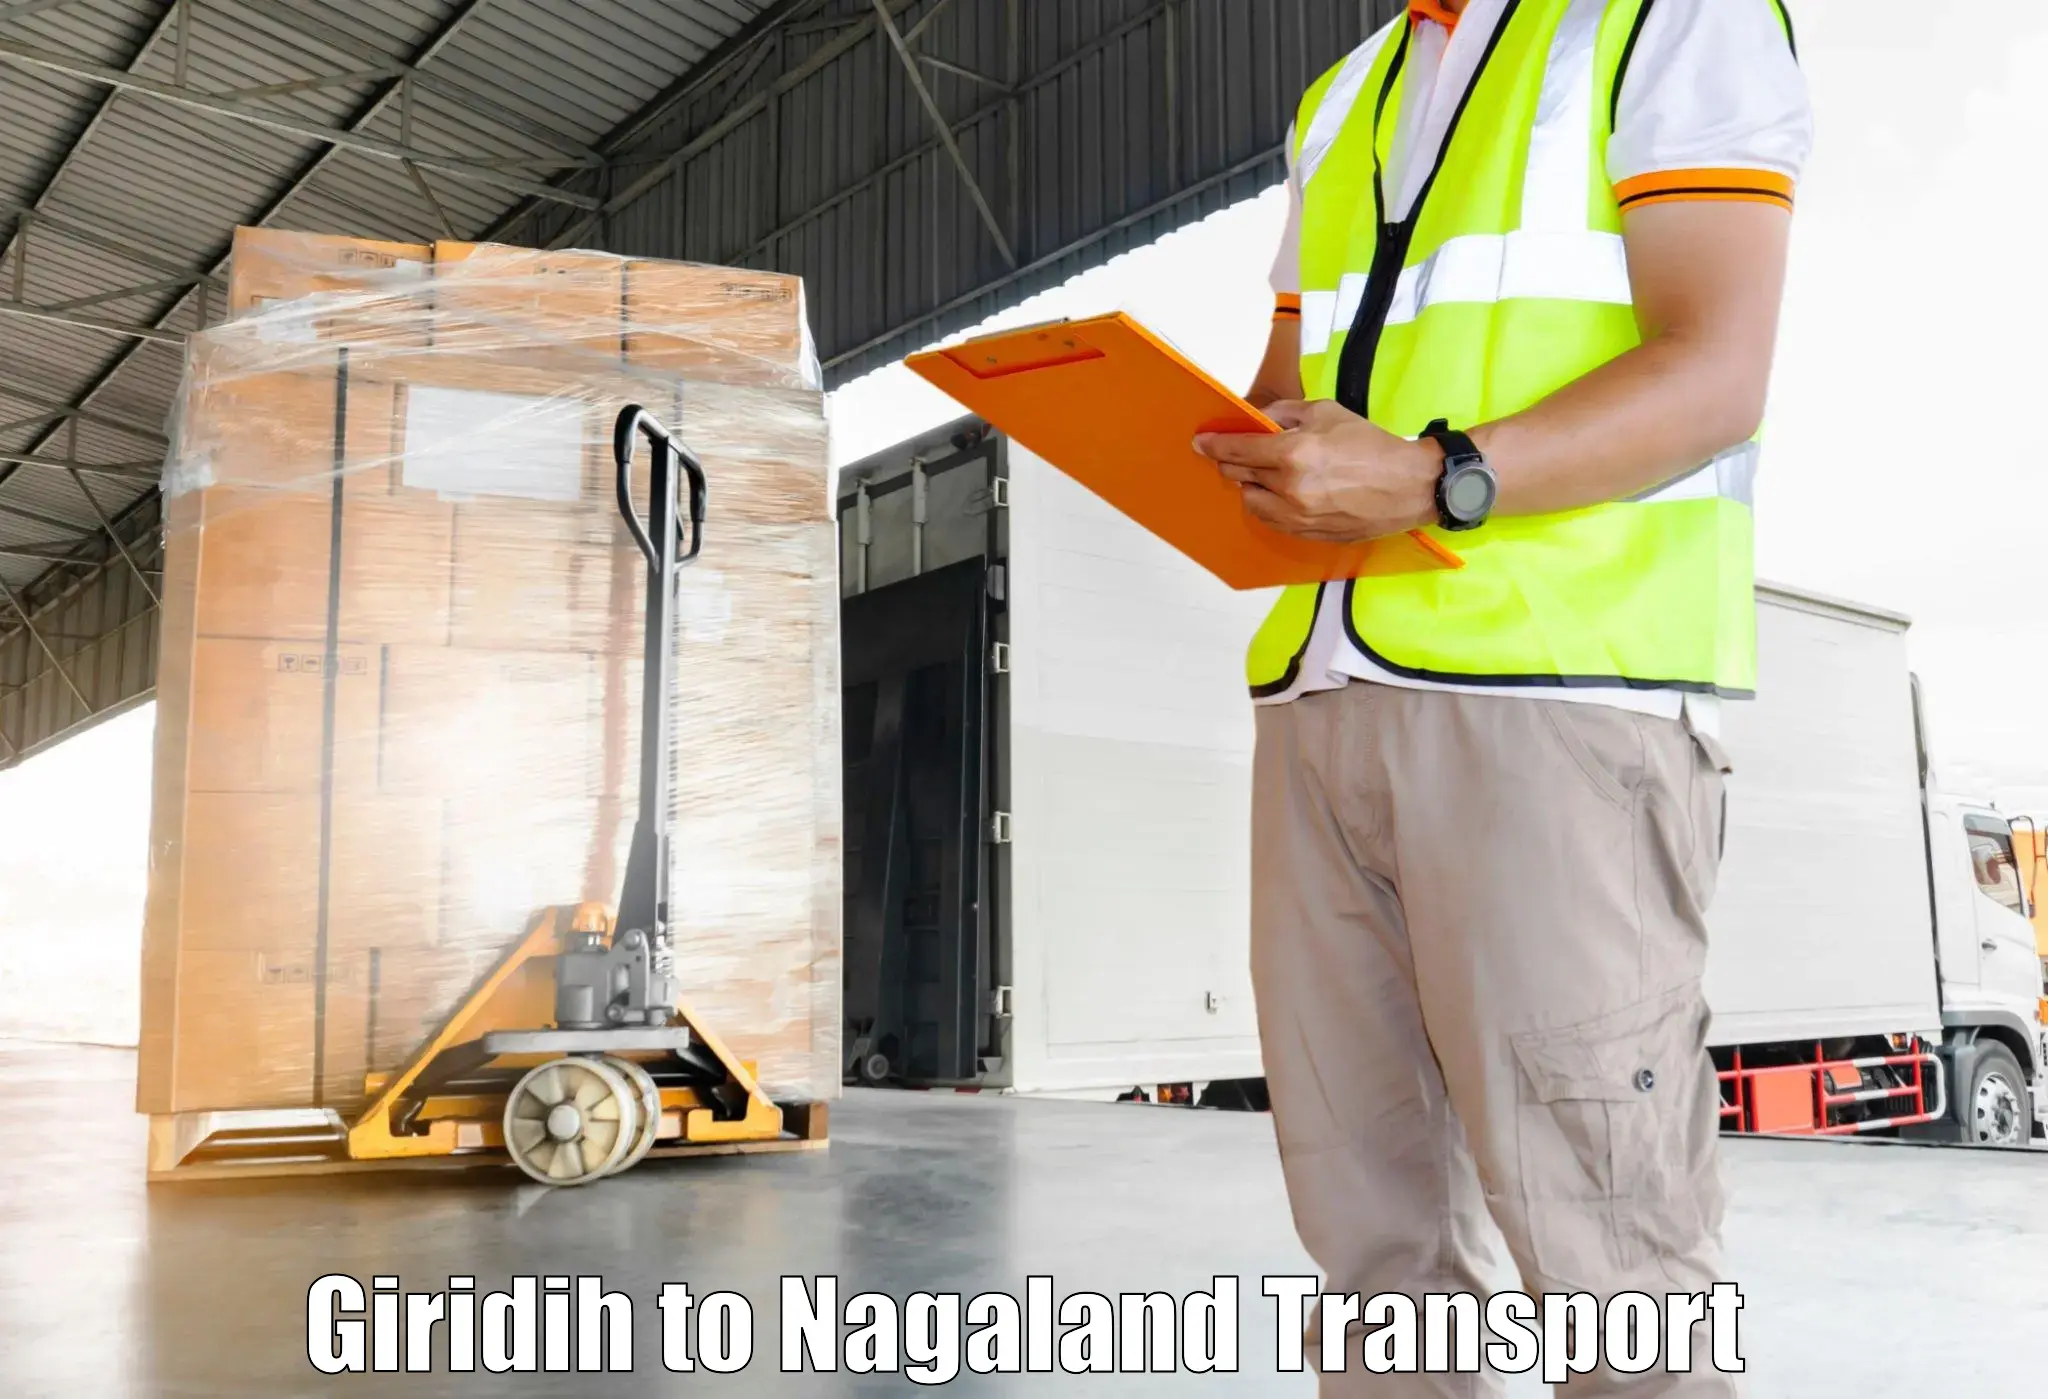 Cargo transport services Giridih to NIT Nagaland